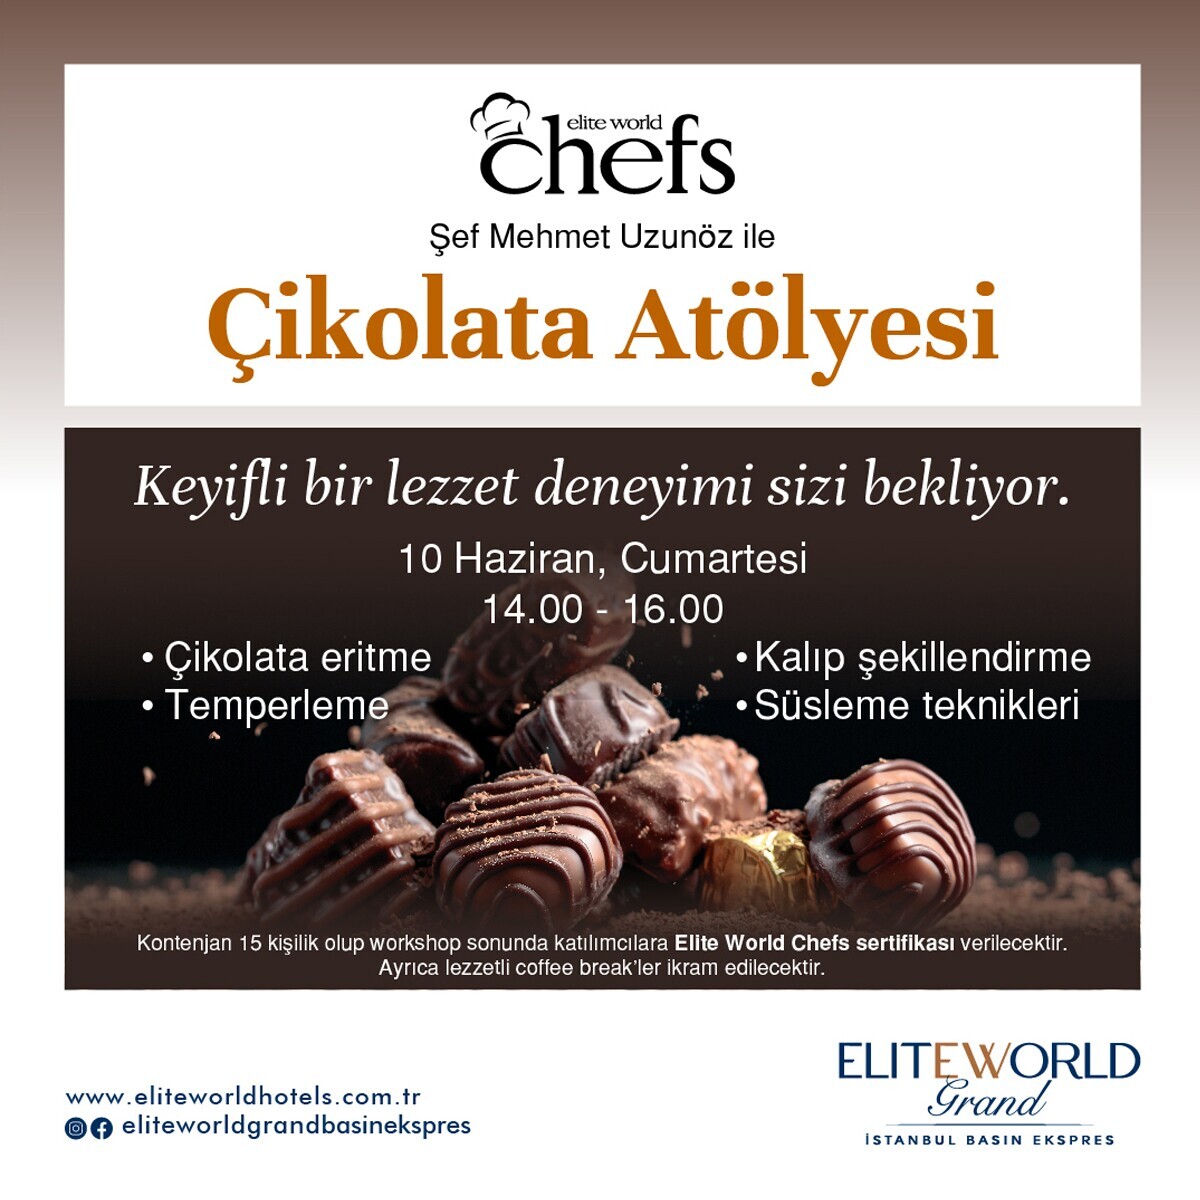 Elite World Grand Istanbul Basın Ekspres’te Çikolata Workshopu + (Coffee Break İkramı)